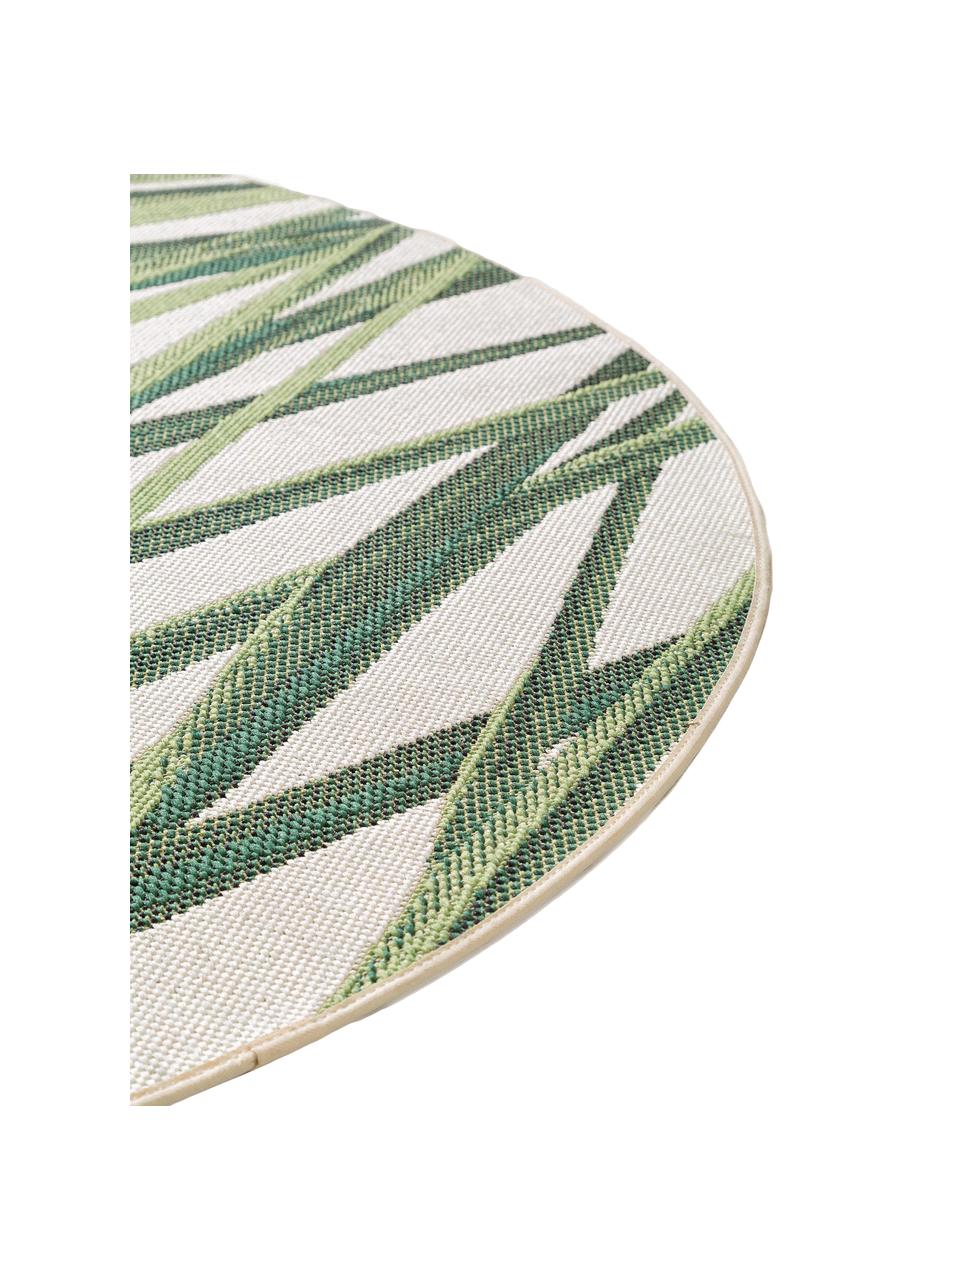 Tappeto rotondo da interno-esterno con motivo foglie Capri, 100% polipropilene, Verde, beige, Ø 160 cm (taglia L)